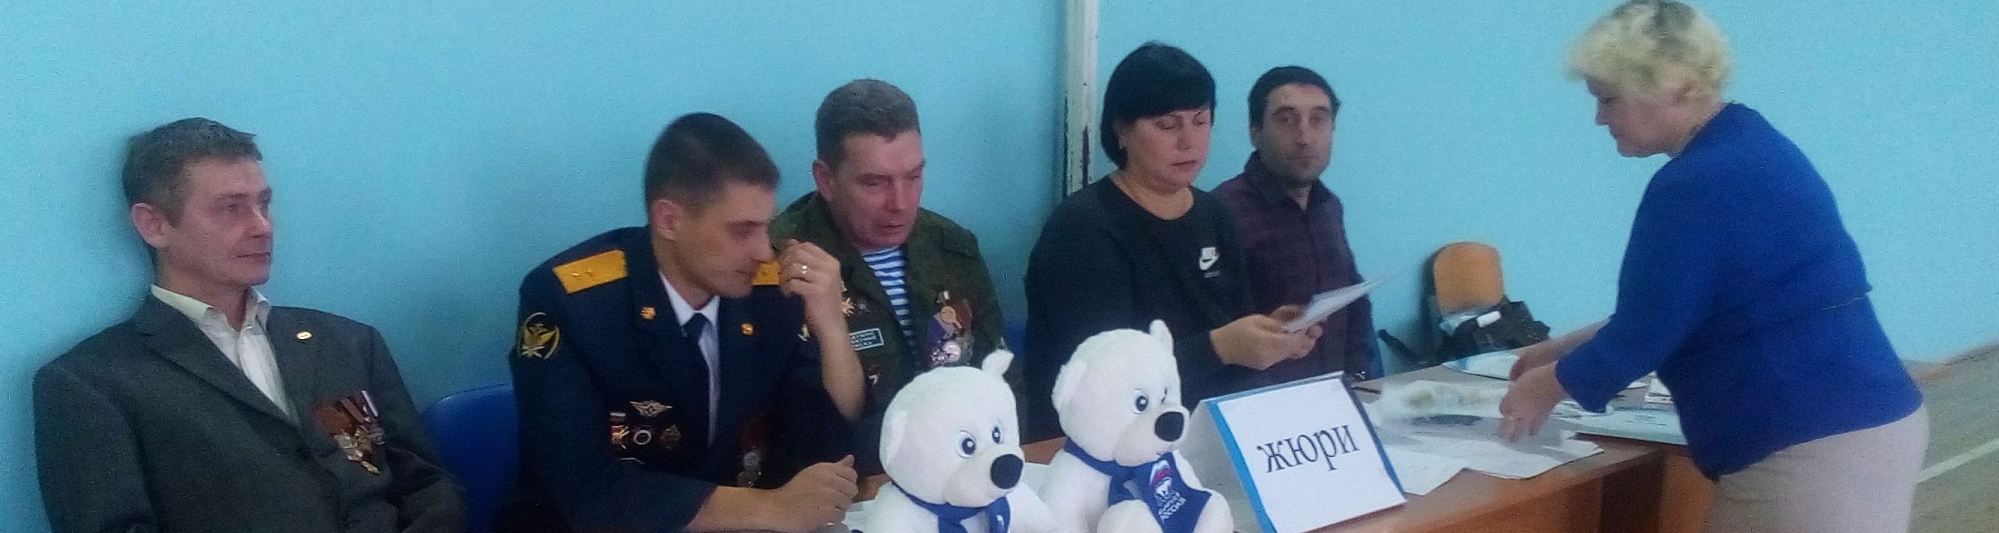 Олег Правдин принял участие в спортивно-патриотическом празднике